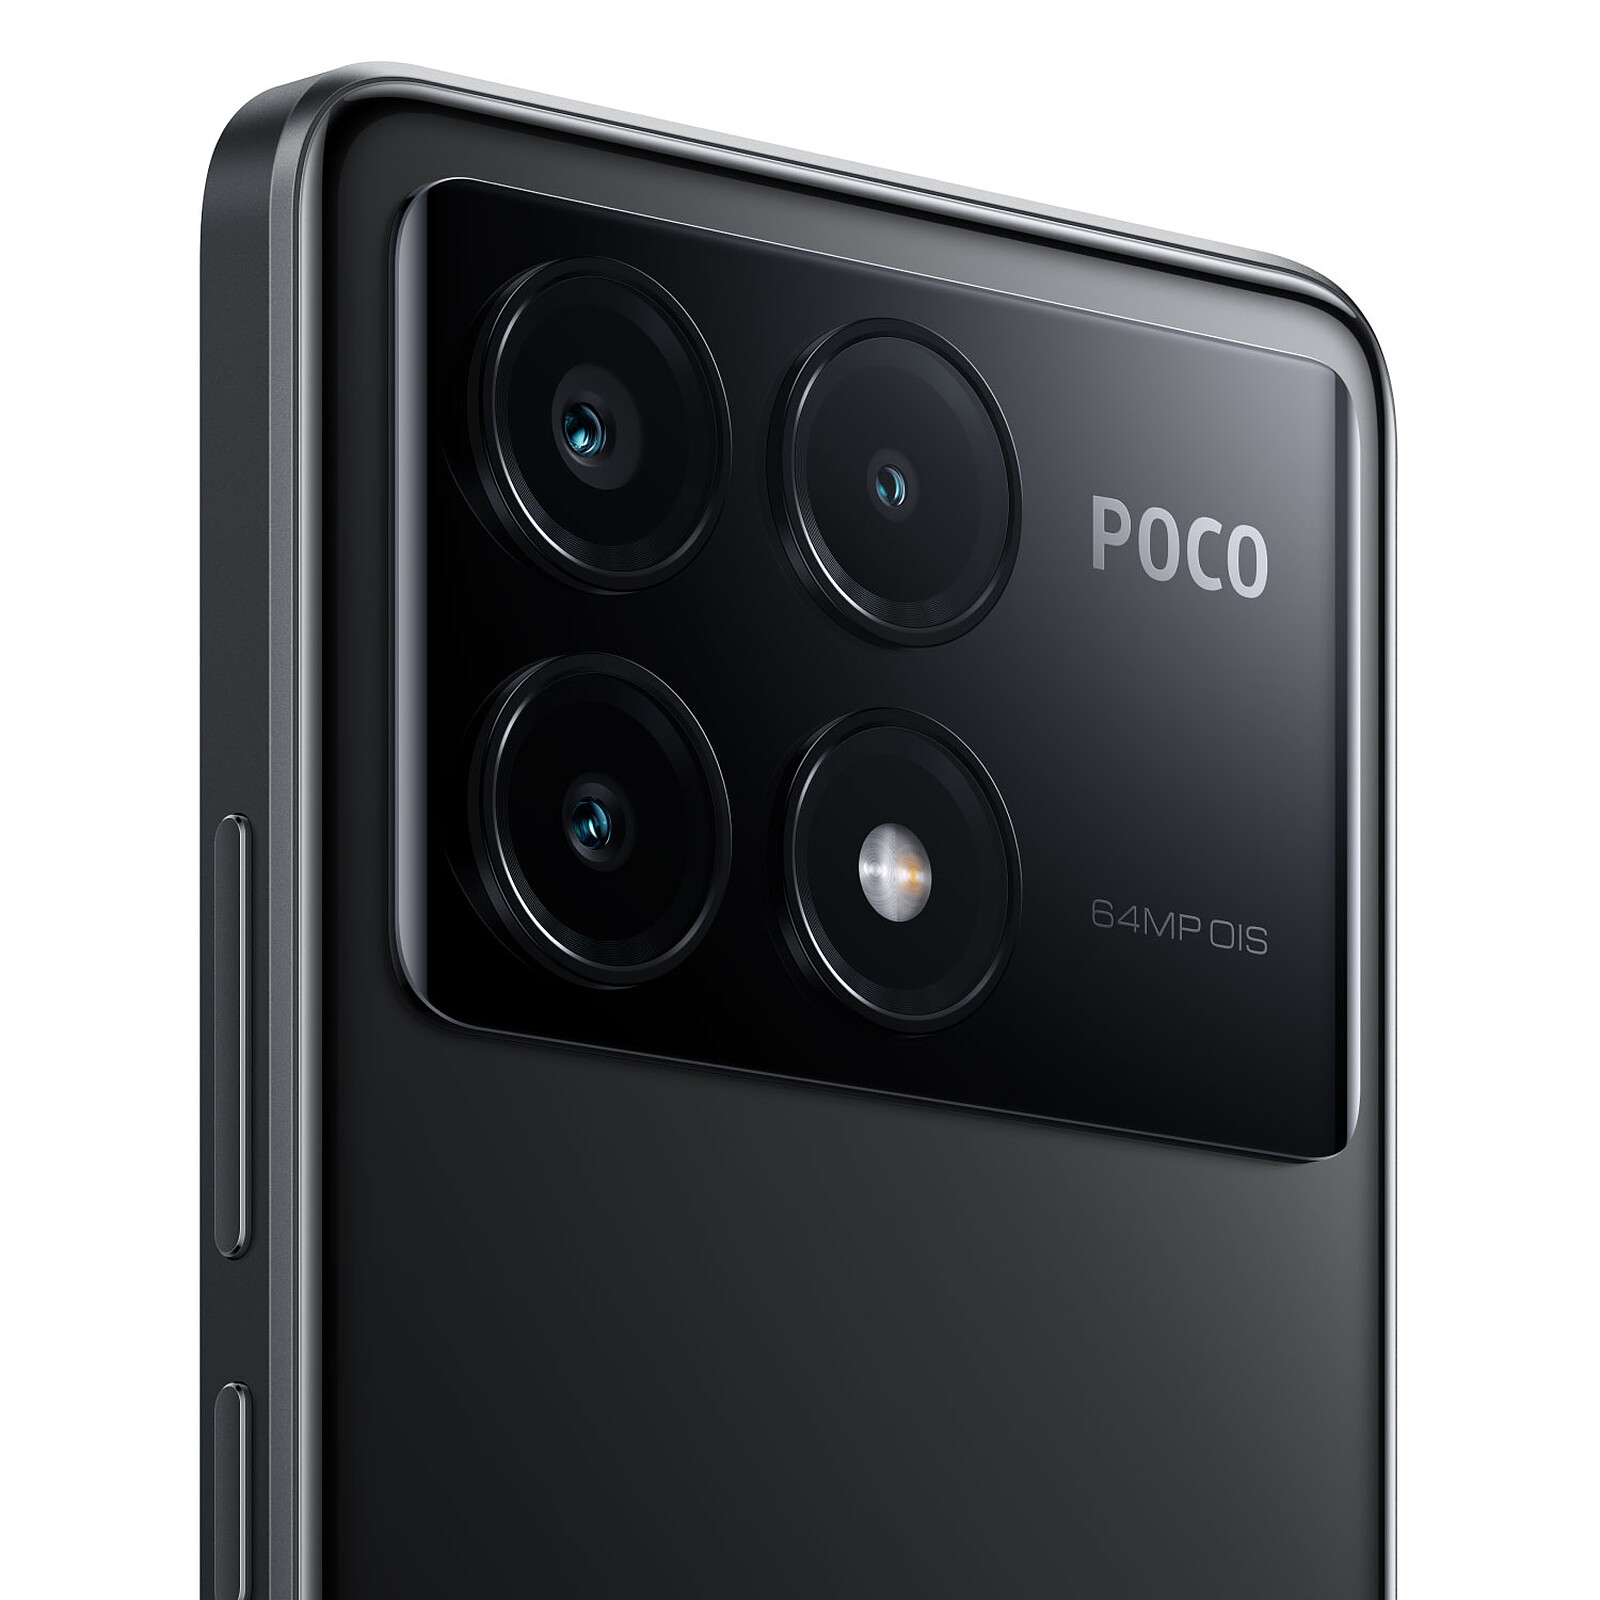 POCO X6 Pro 5G 8/256GB Gris Libre